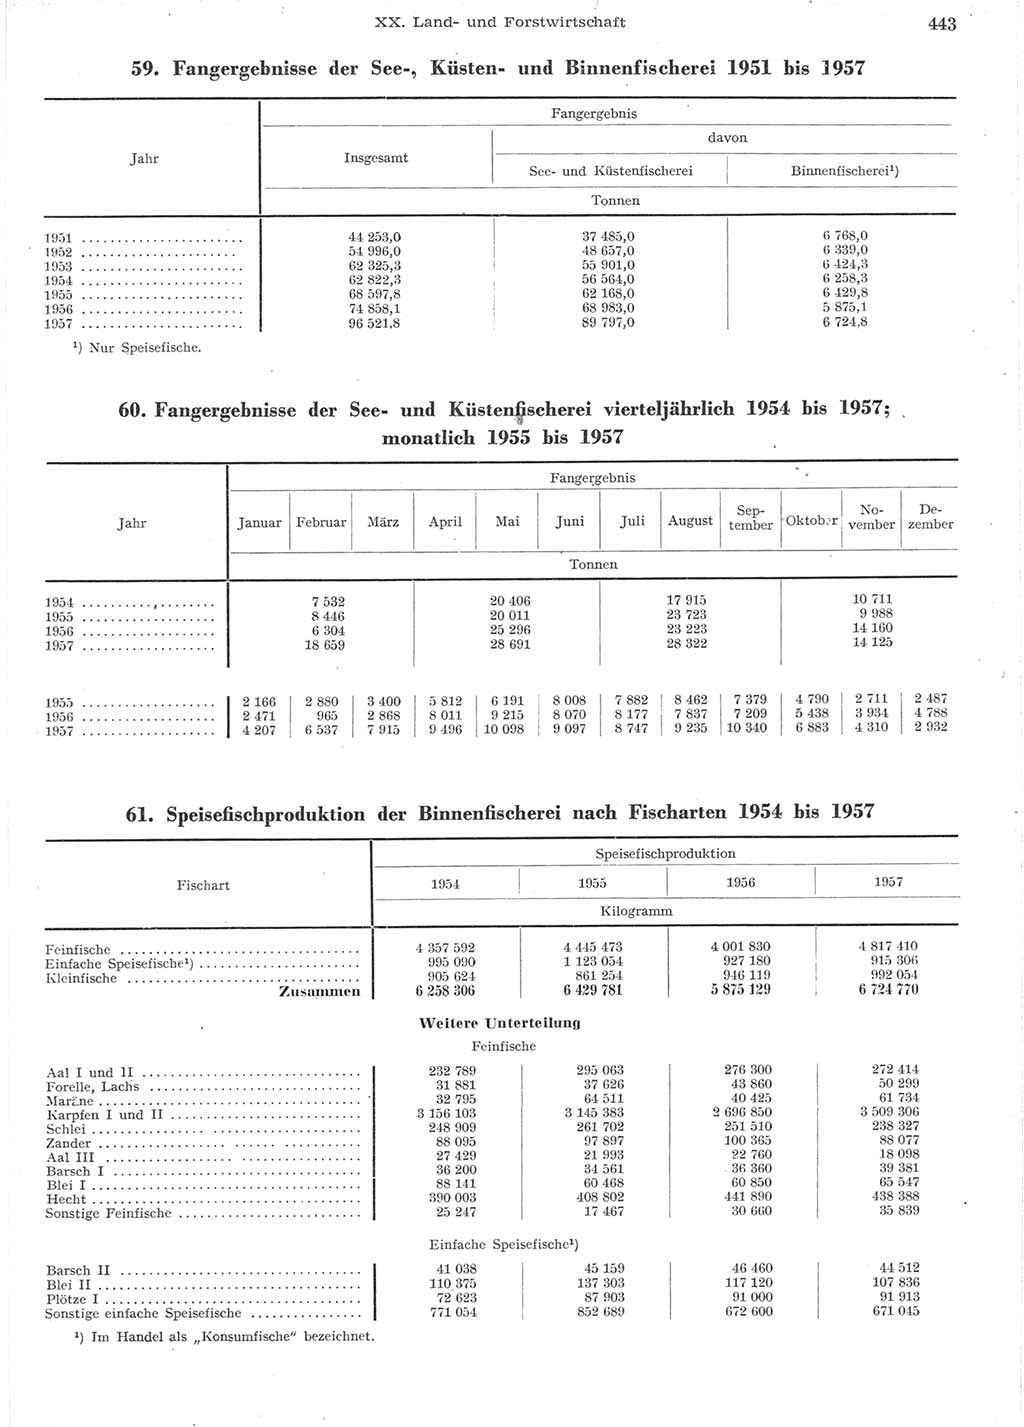 Statistisches Jahrbuch der Deutschen Demokratischen Republik (DDR) 1957, Seite 443 (Stat. Jb. DDR 1957, S. 443)